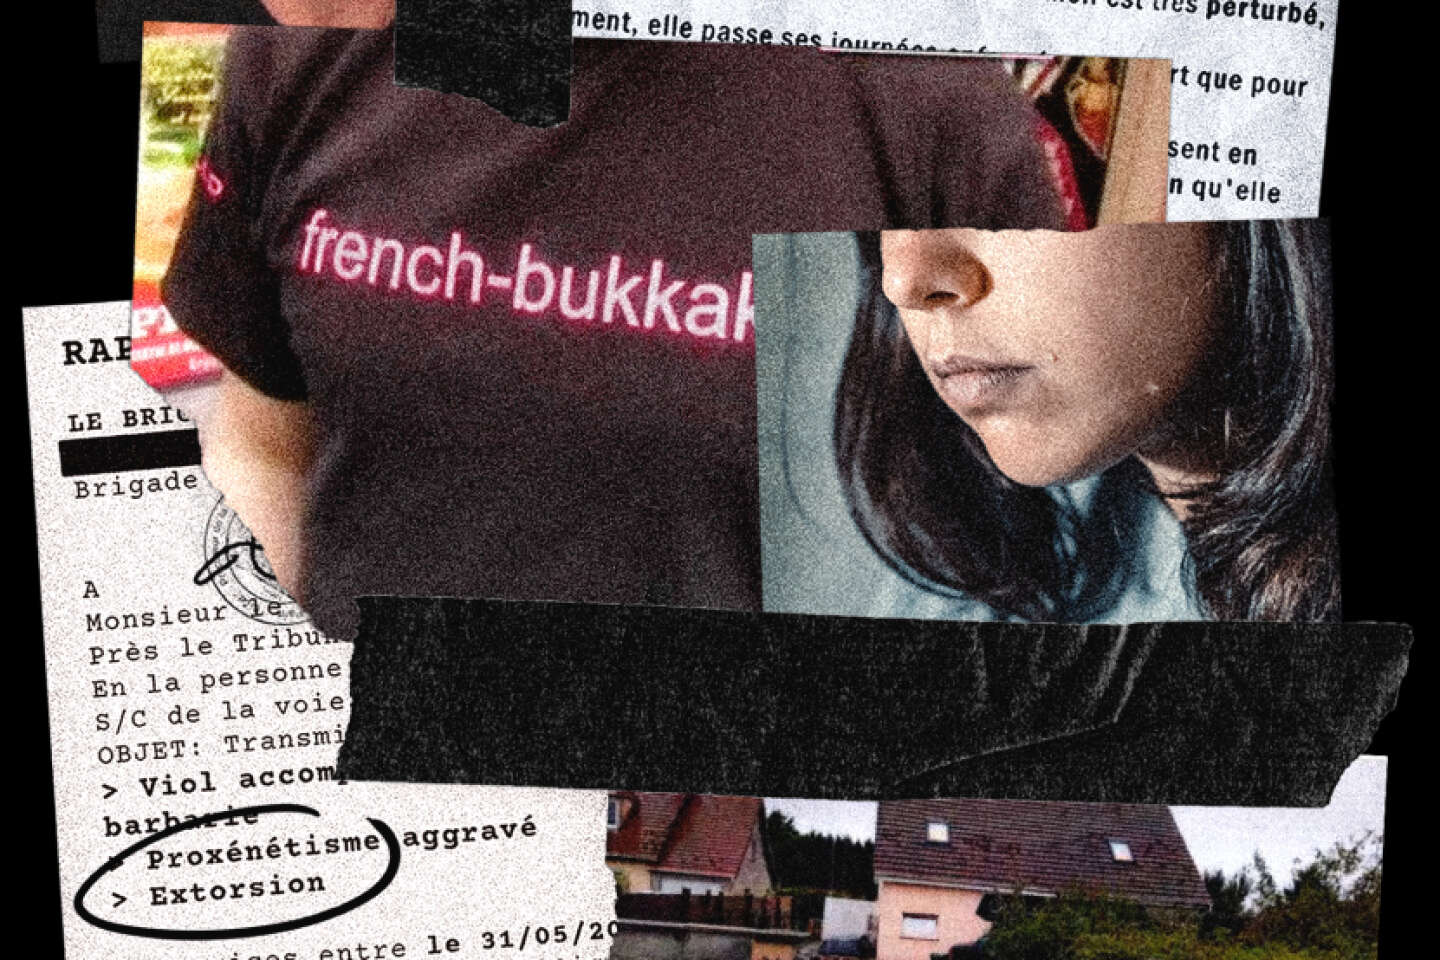 Violences sexuelles dans le porno trois nouvelles gardes à vue dans le dossier « French Bukkake »